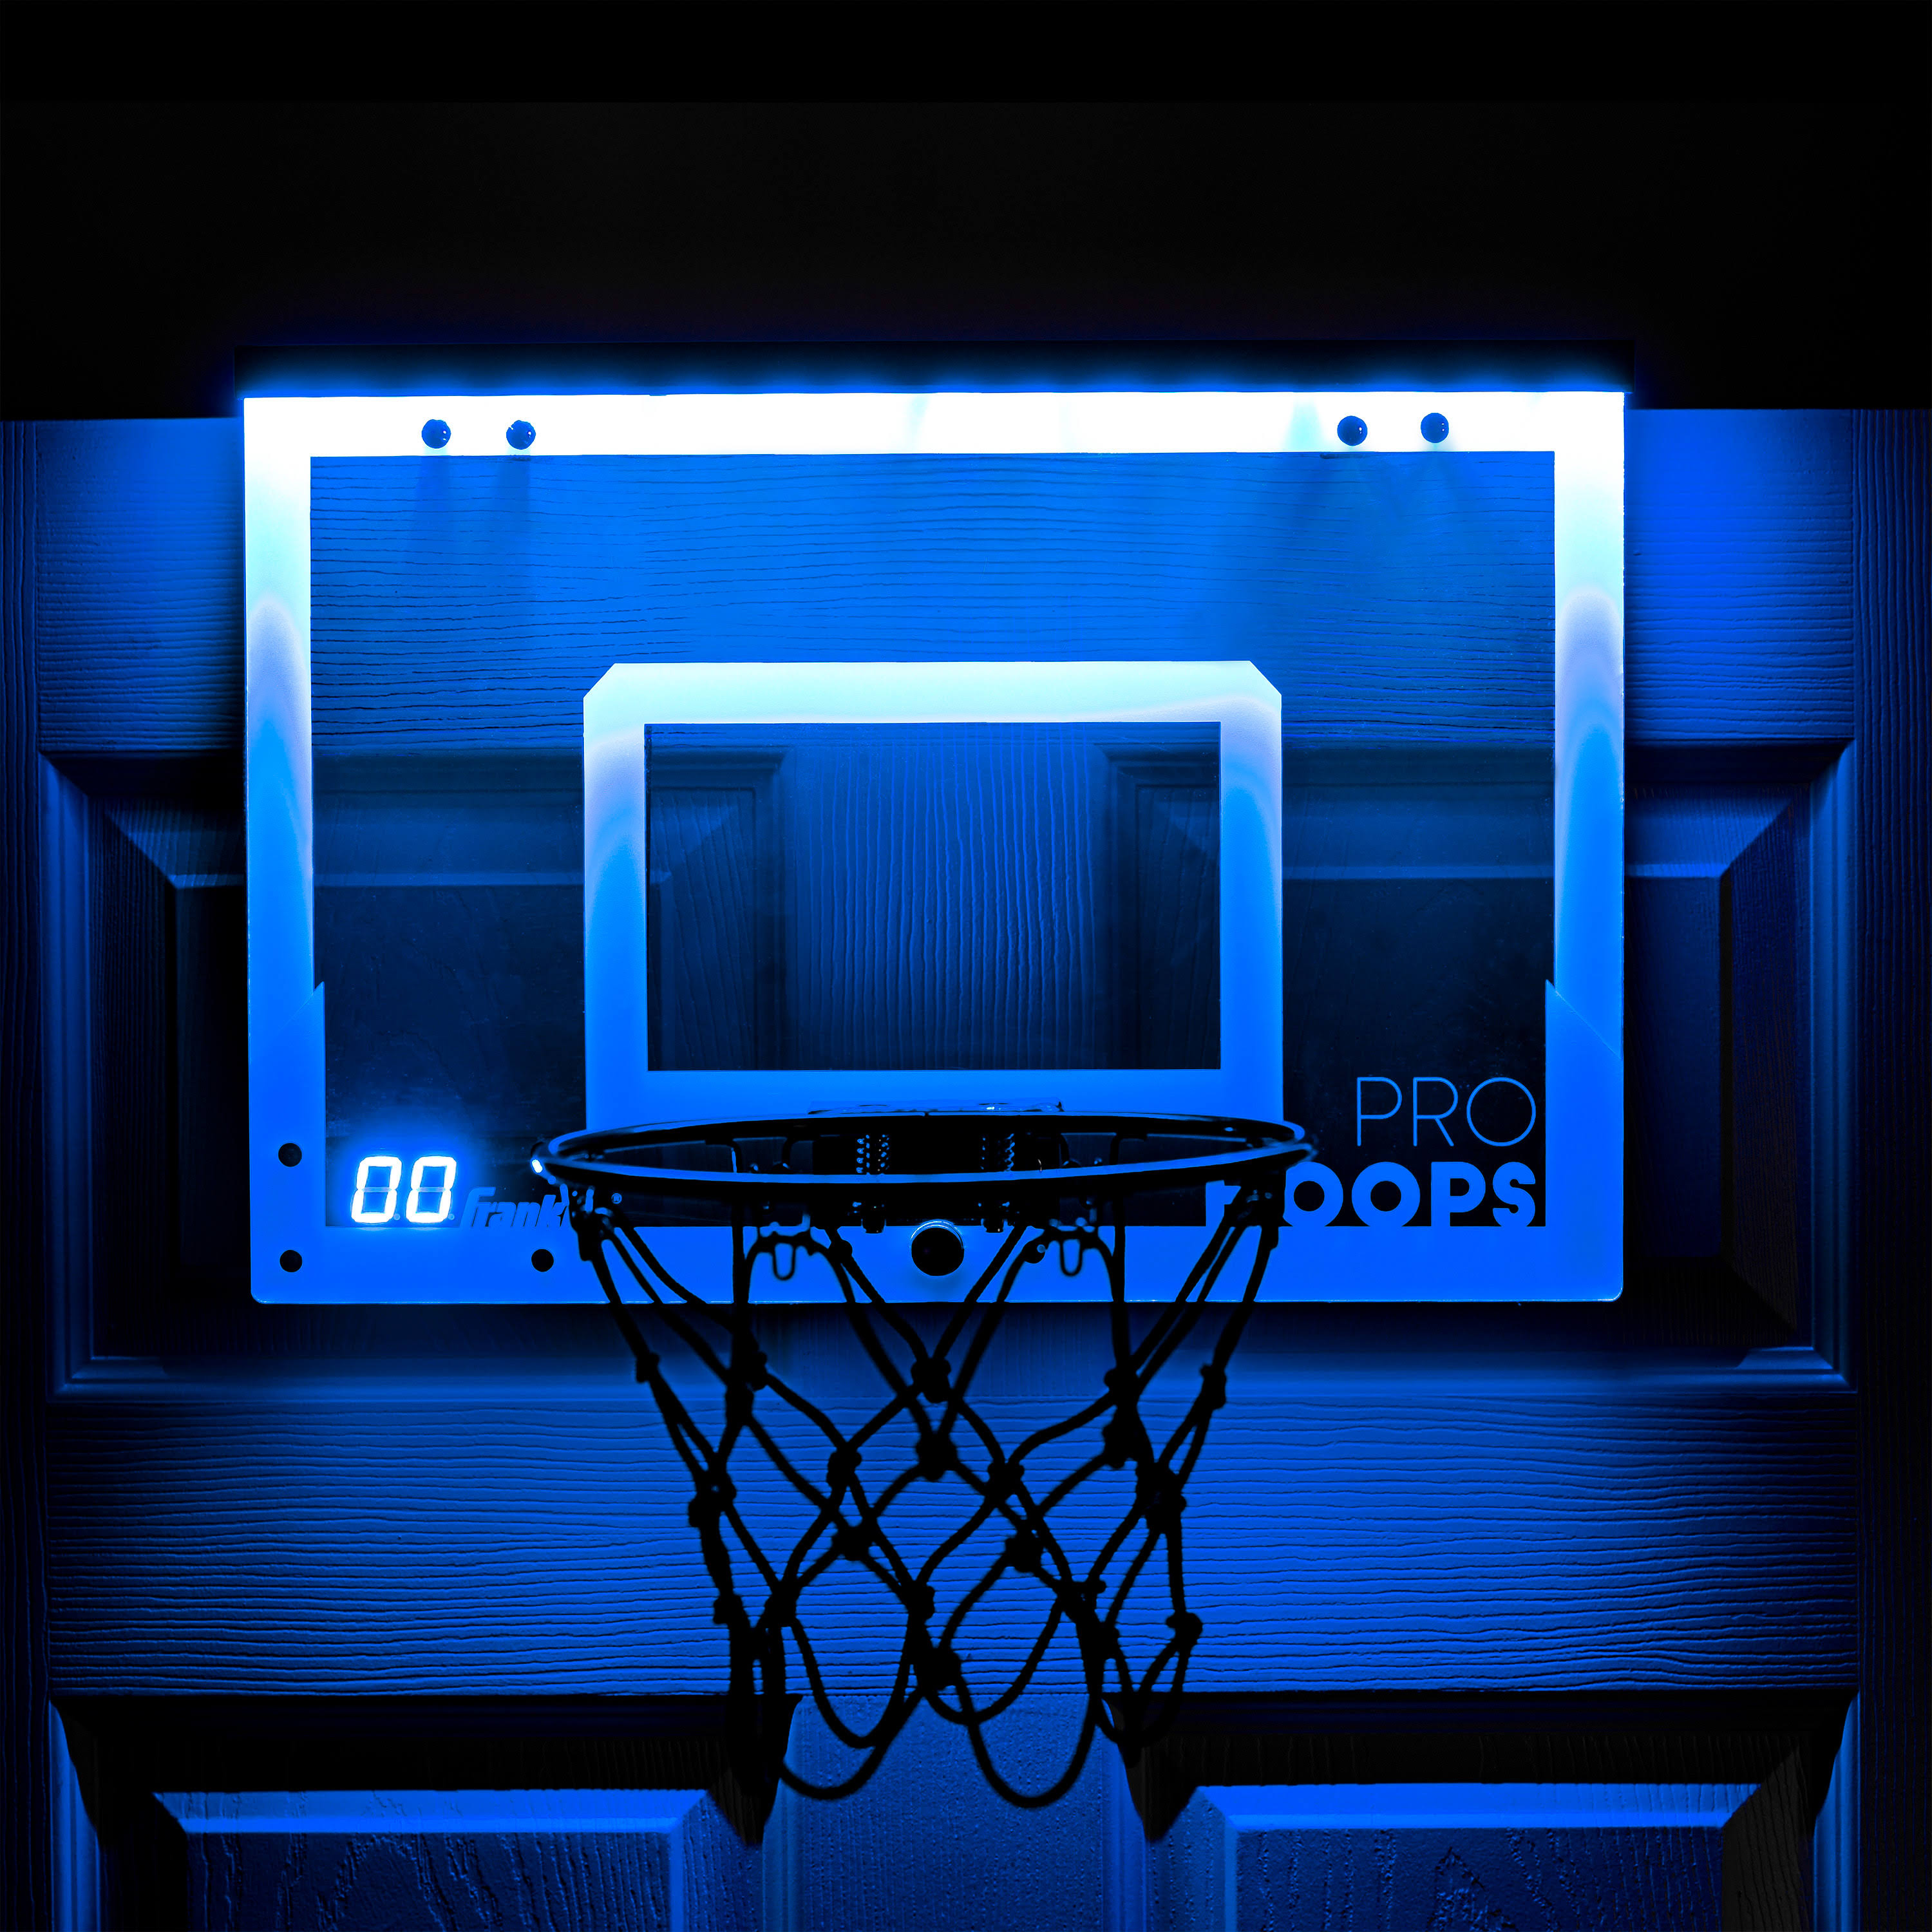 Franklin 54272 Pro Hoops Basketball Set